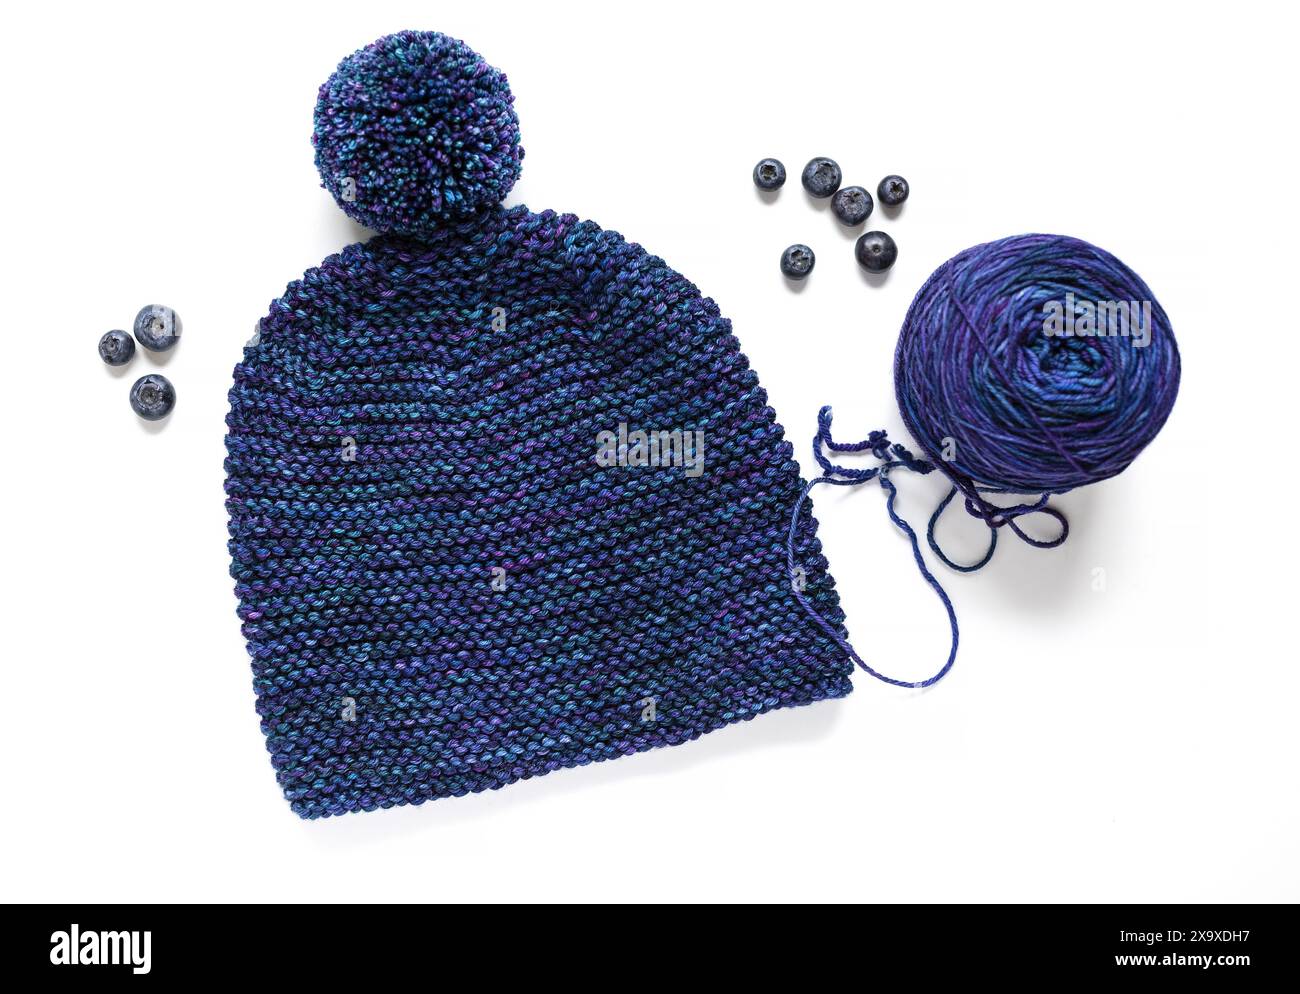 Fotografia piatta di un cappello in maglia blu con pompon e palla in filato di lana tinta a mano su sfondo bianco Foto Stock